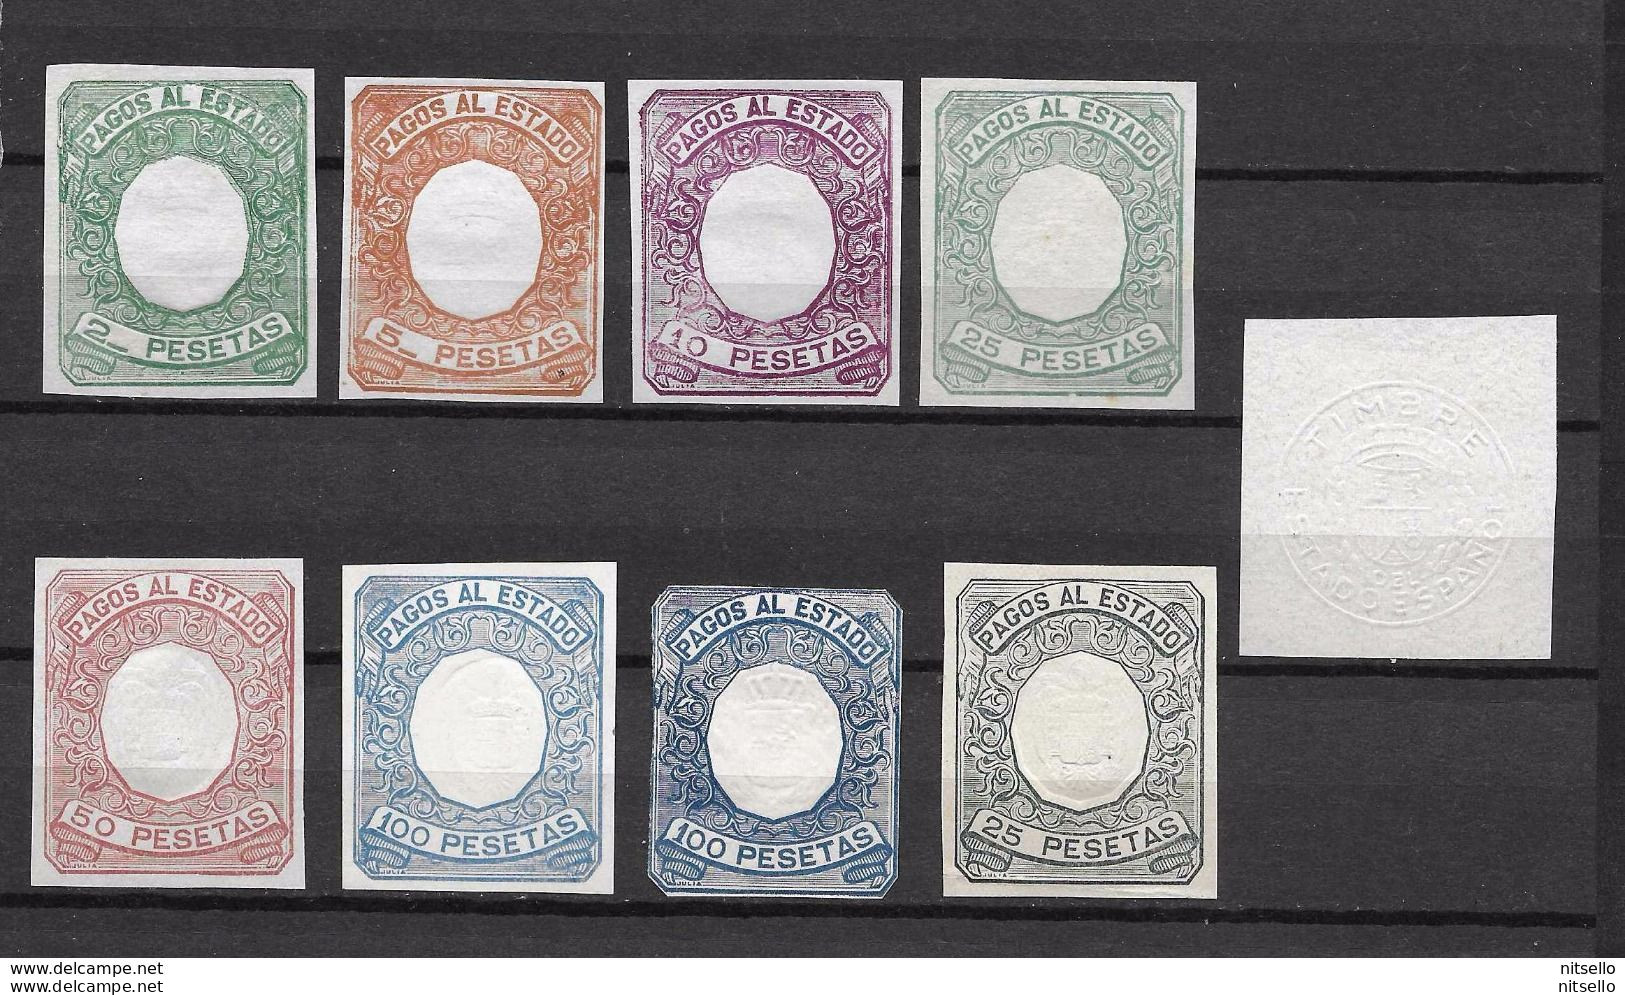 LOTE 1891 B   ///  ESPAÑA  FISCALES - PAGOS AL ESTADO - Revenue Stamps